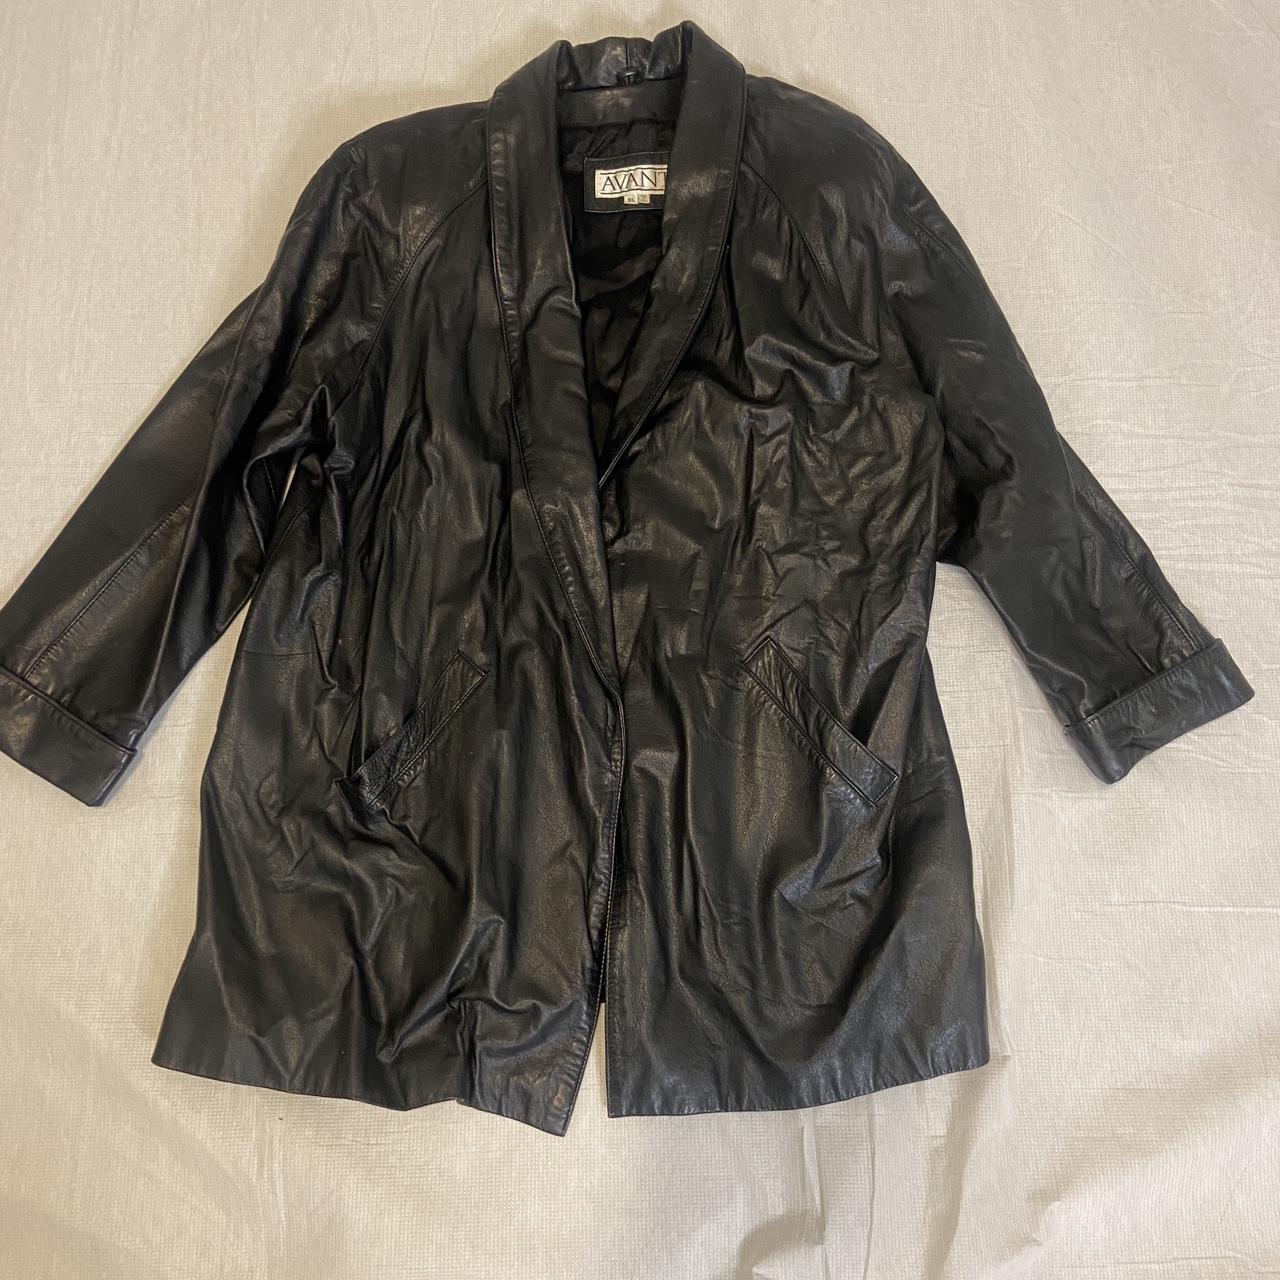 😎 Vintage Avanti Leather Jacket Fits like a medium,... - Depop